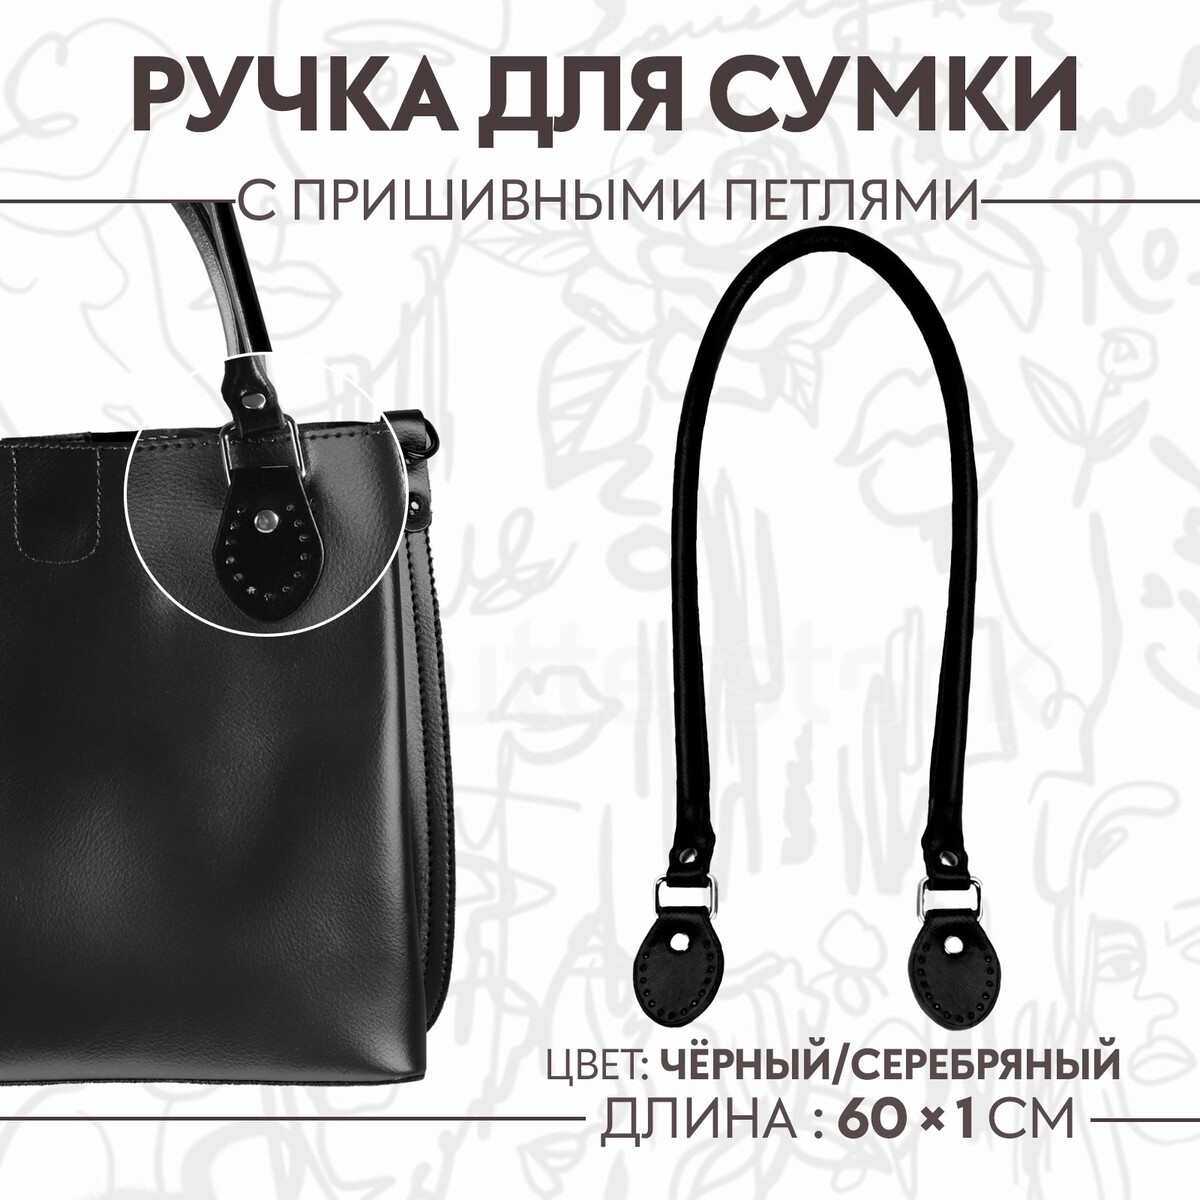 Ручка для сумки, 60 × 1 см, с пришивными петлями 3,5 см, цвет черный/серебряный ручка для сумки шнуры 60 × 1 8 см с пришивными петлями 5 8 см белый серебряный